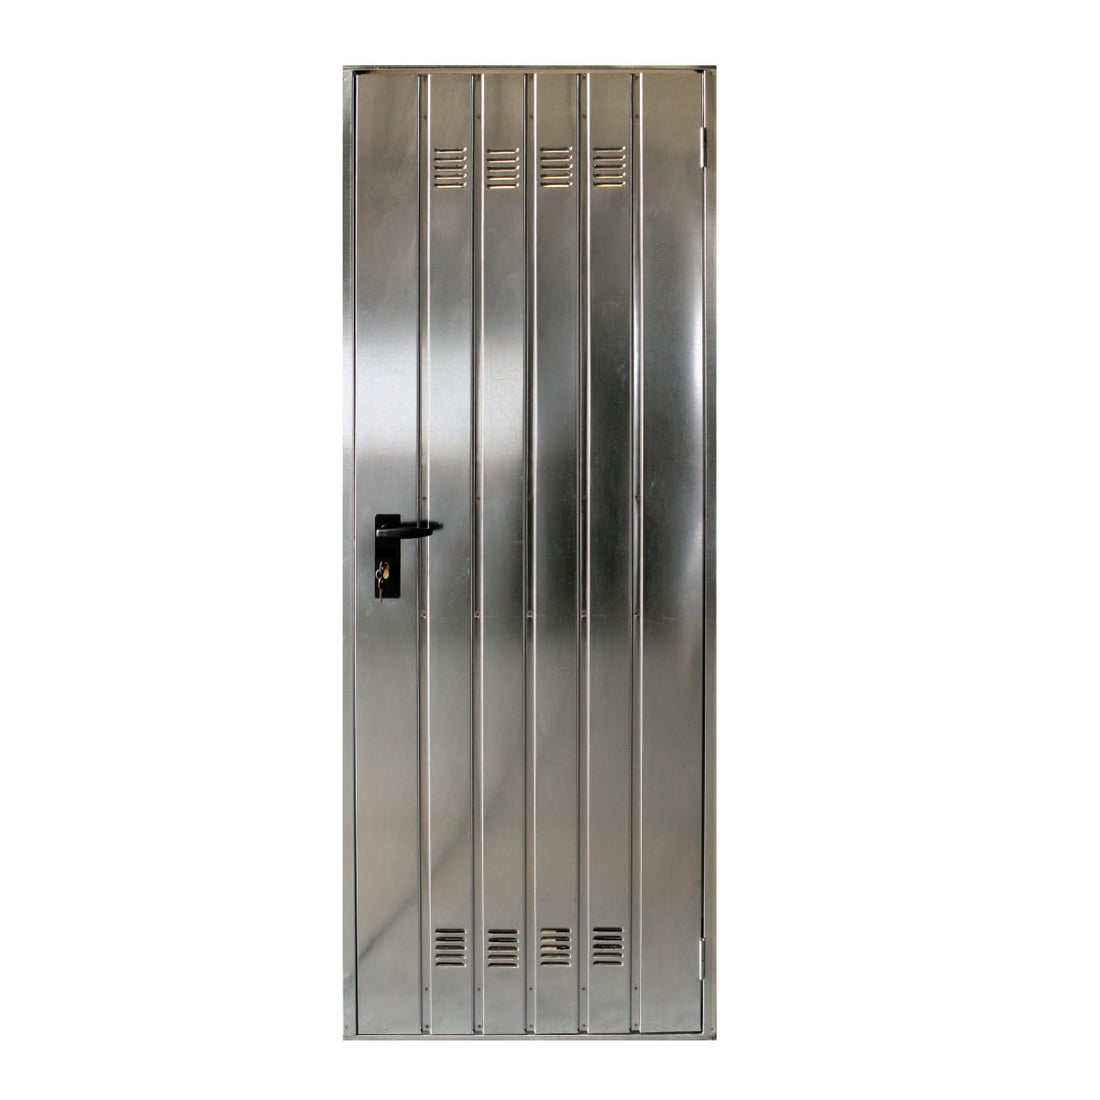 SHEET METAL SERVICE DOOR 100X200 CILIN/MAN